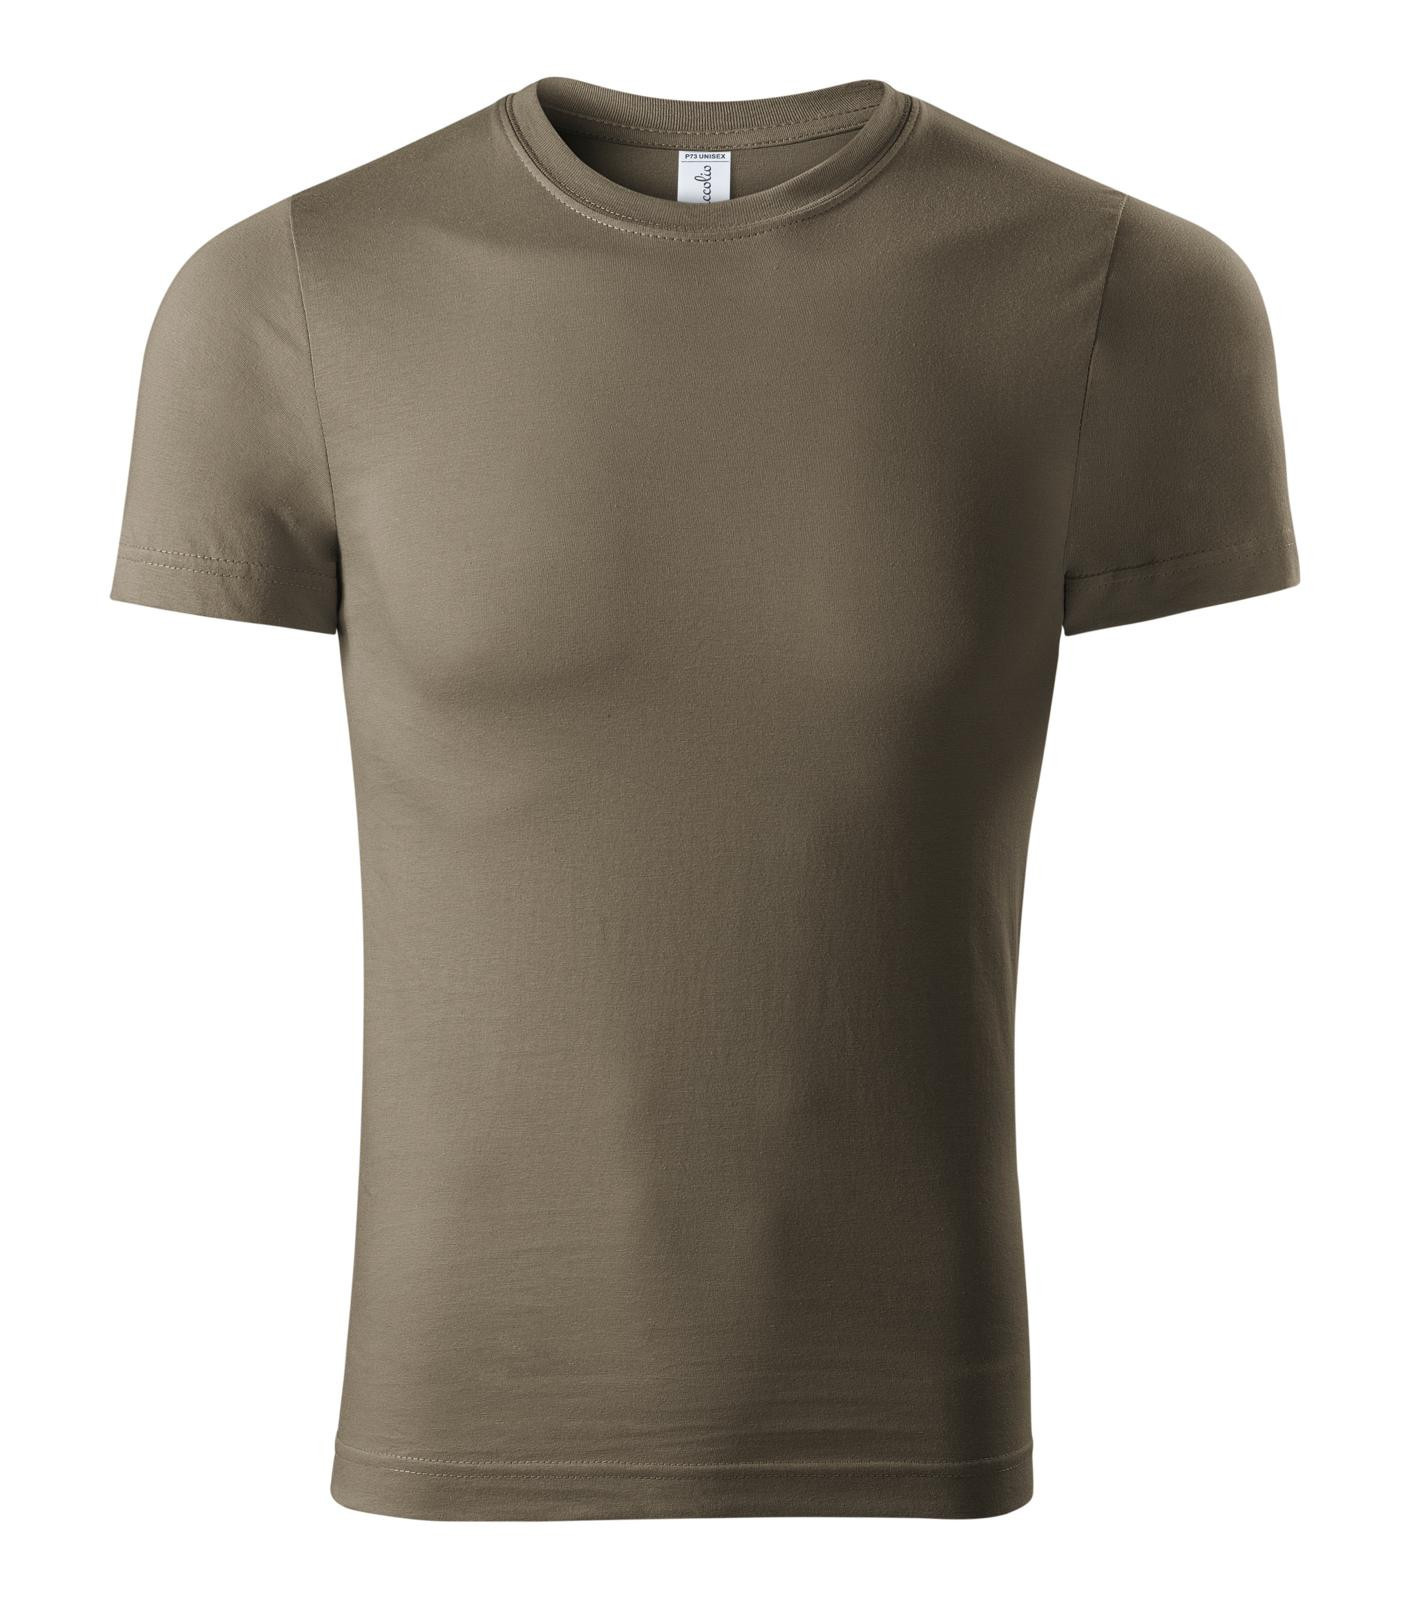 Unisex tričko Piccolio Paint P73 - veľkosť: M, farba: army